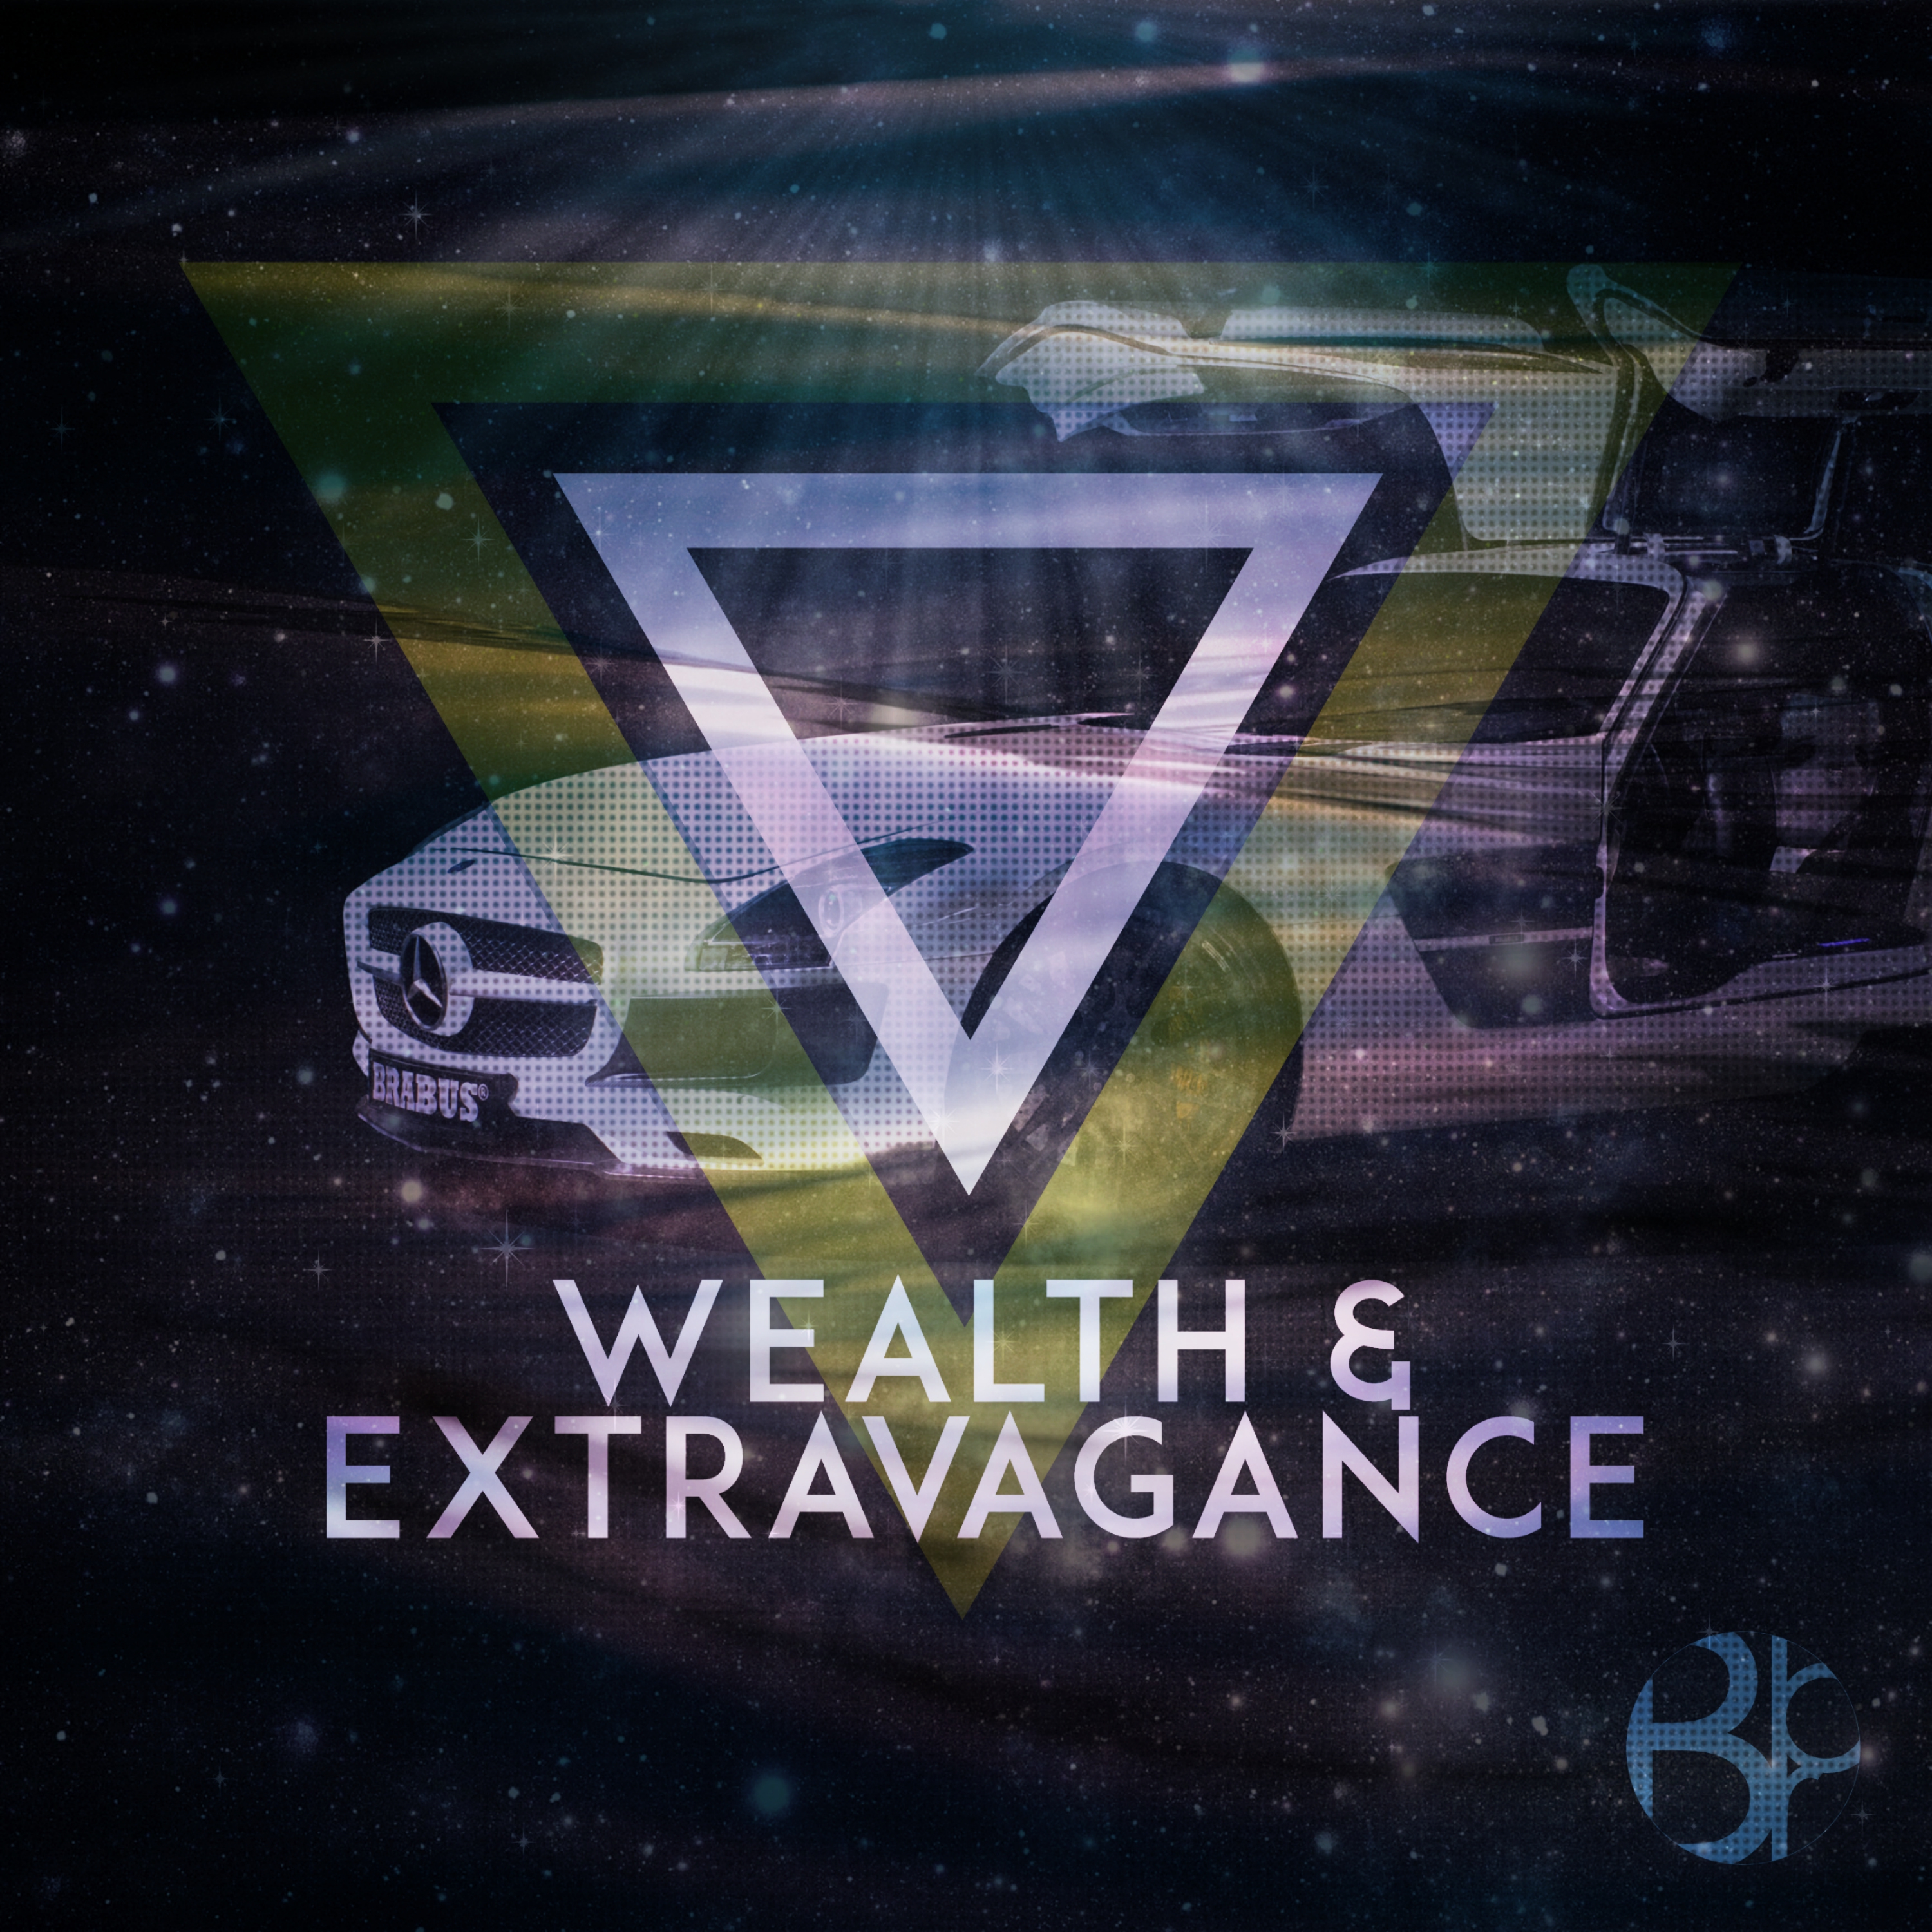 Wealth & Extravagance